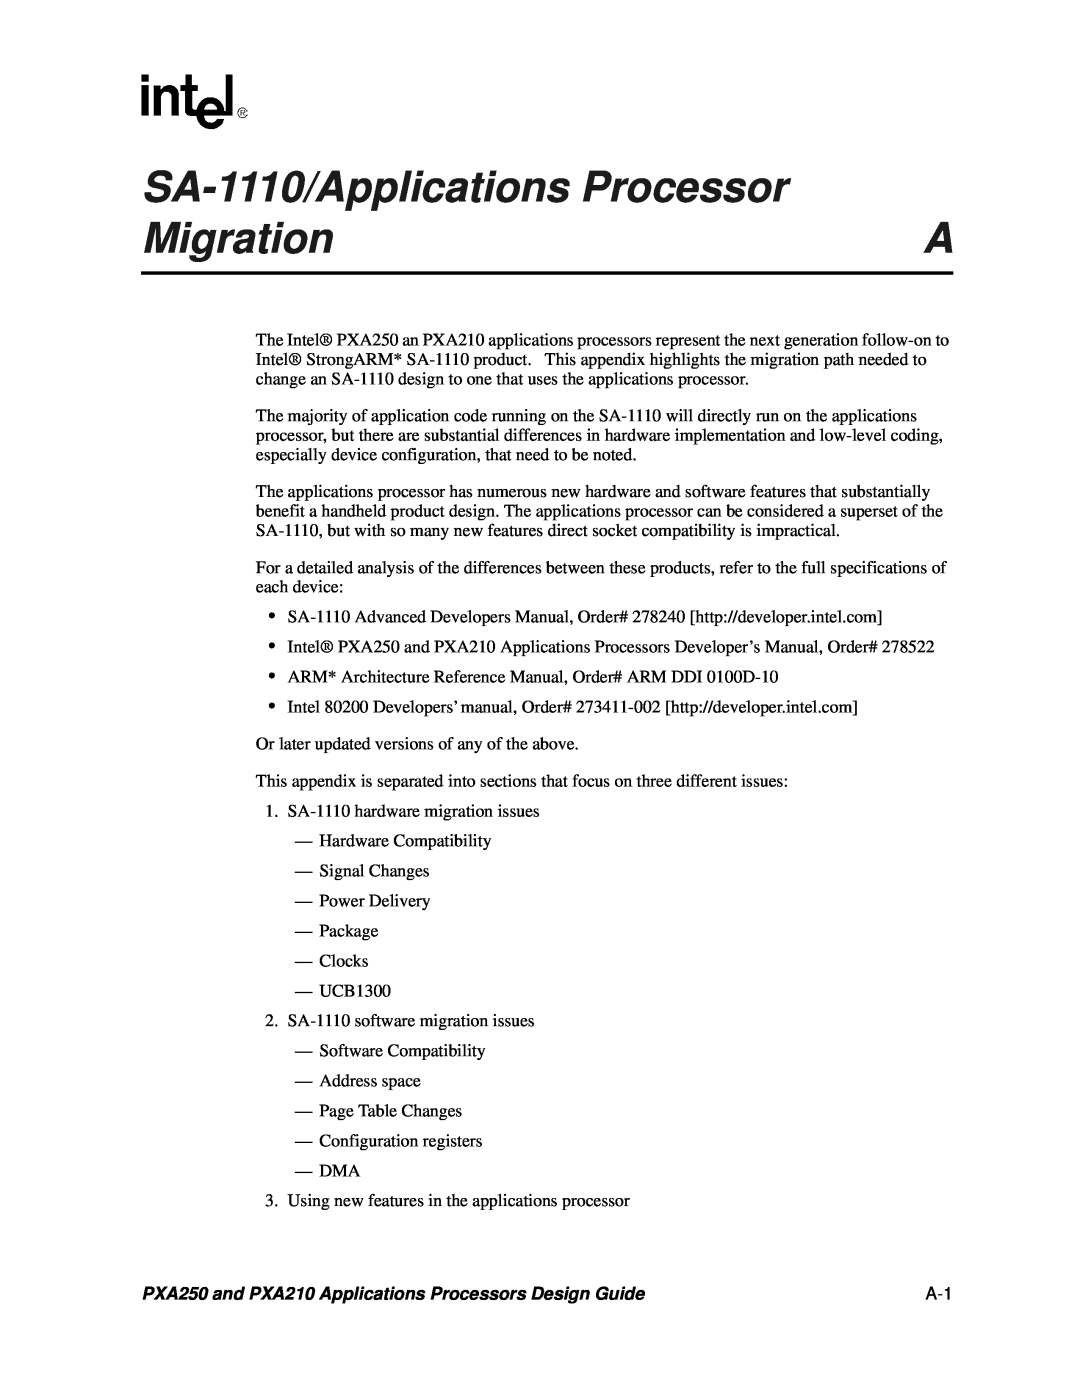 Intel manual SA-1110/Applications Processor, Migration, PXA250 and PXA210 Applications Processors Design Guide 